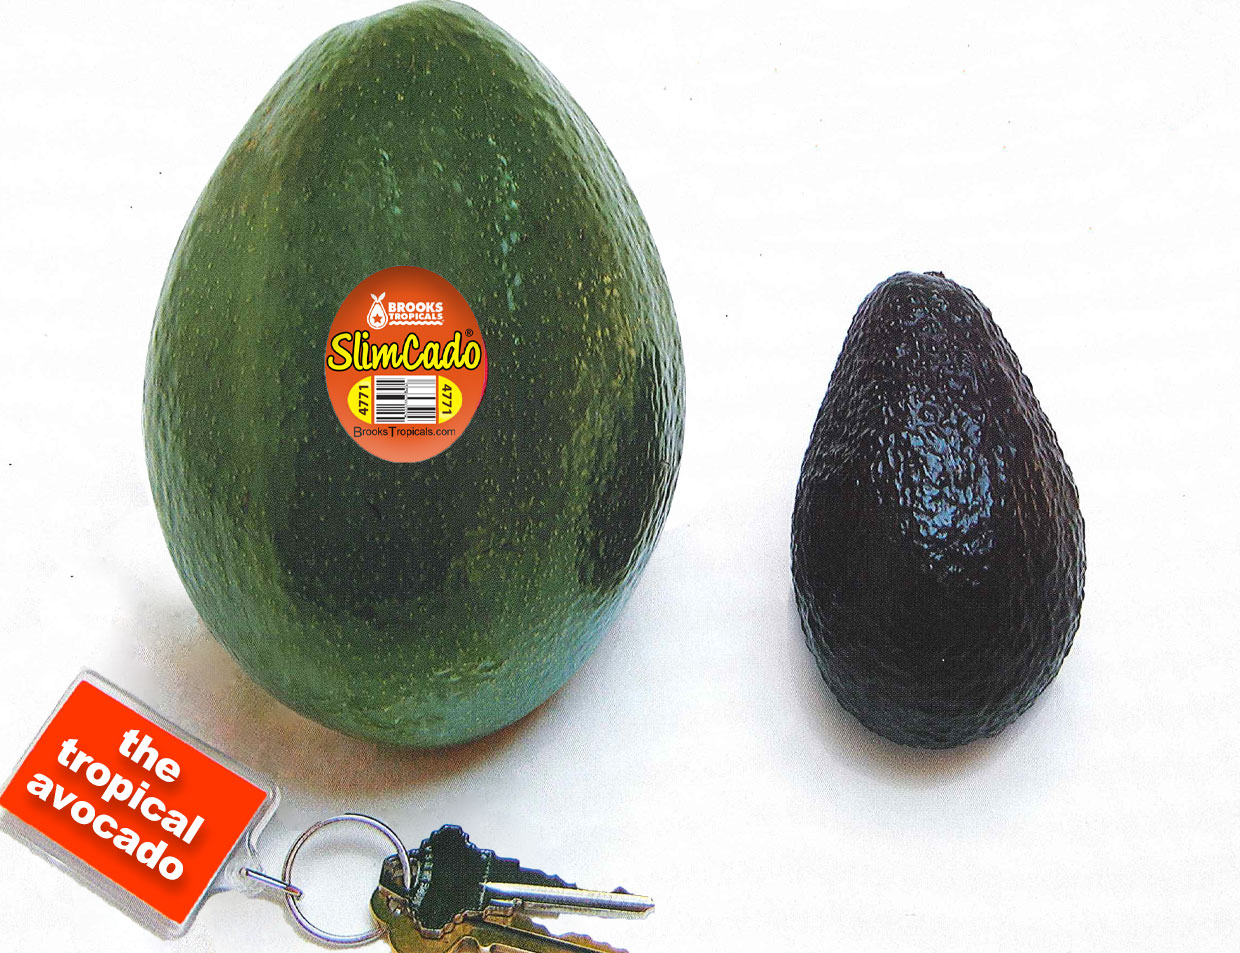 It's a big avocado